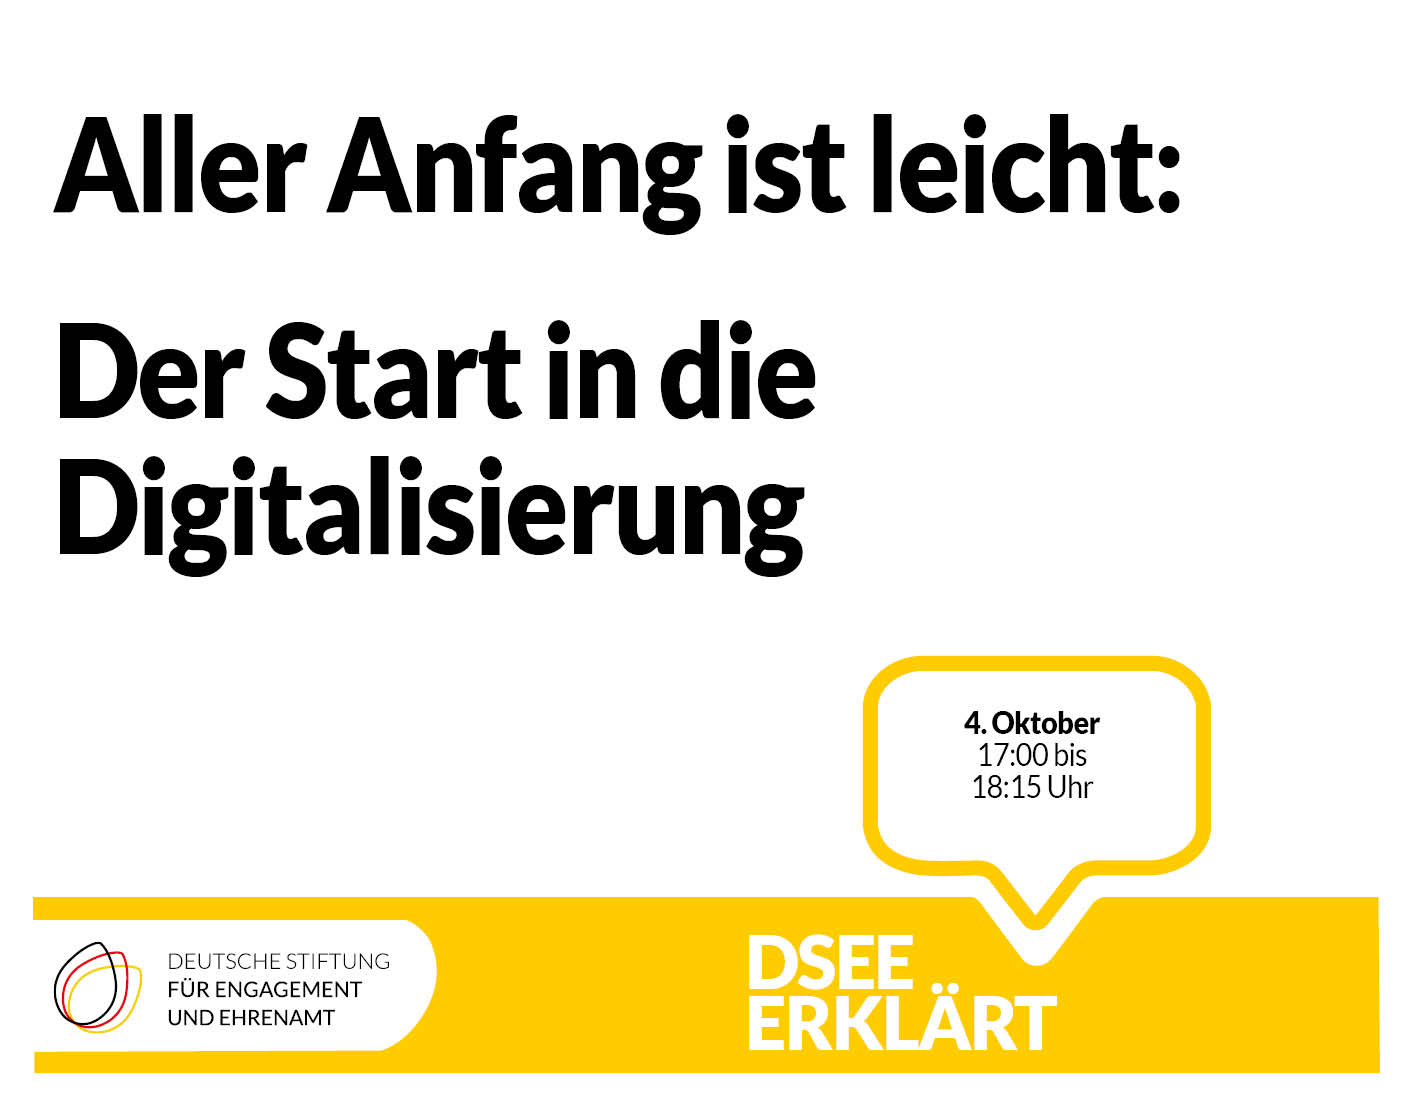 Grafik mit dem Text: Aller Anfang ist leicht: Der Start in die Digitalisierung. DSEEerklärt am 4. Oktober von 17:00 - 18:15 Uhr